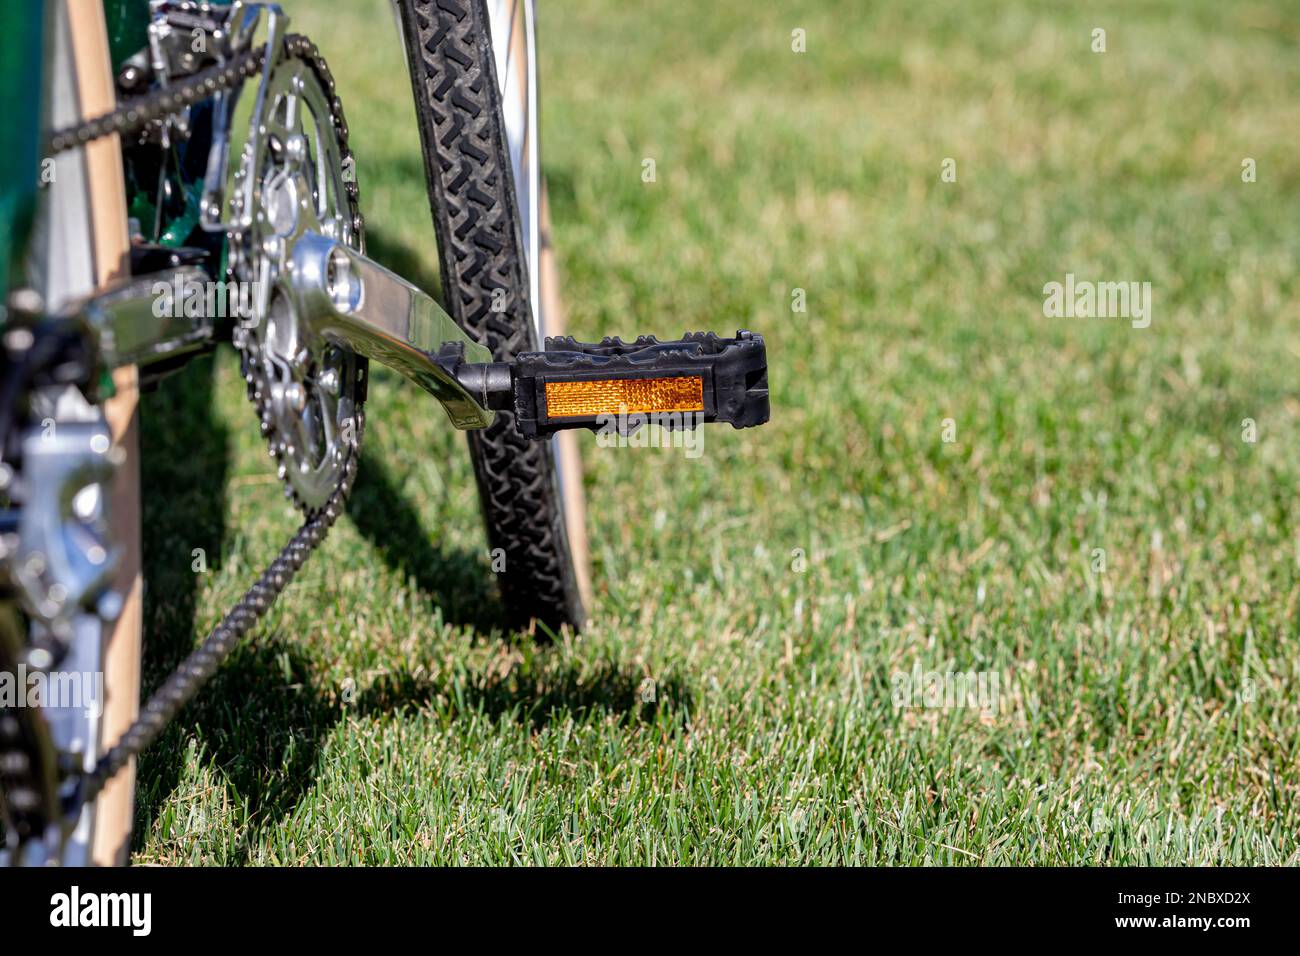 Fahrrad mit Reflektorpedal im Gras im Sommer. Konzept für Radfahren, Radfahren und Outdoor-Training. Stockfoto